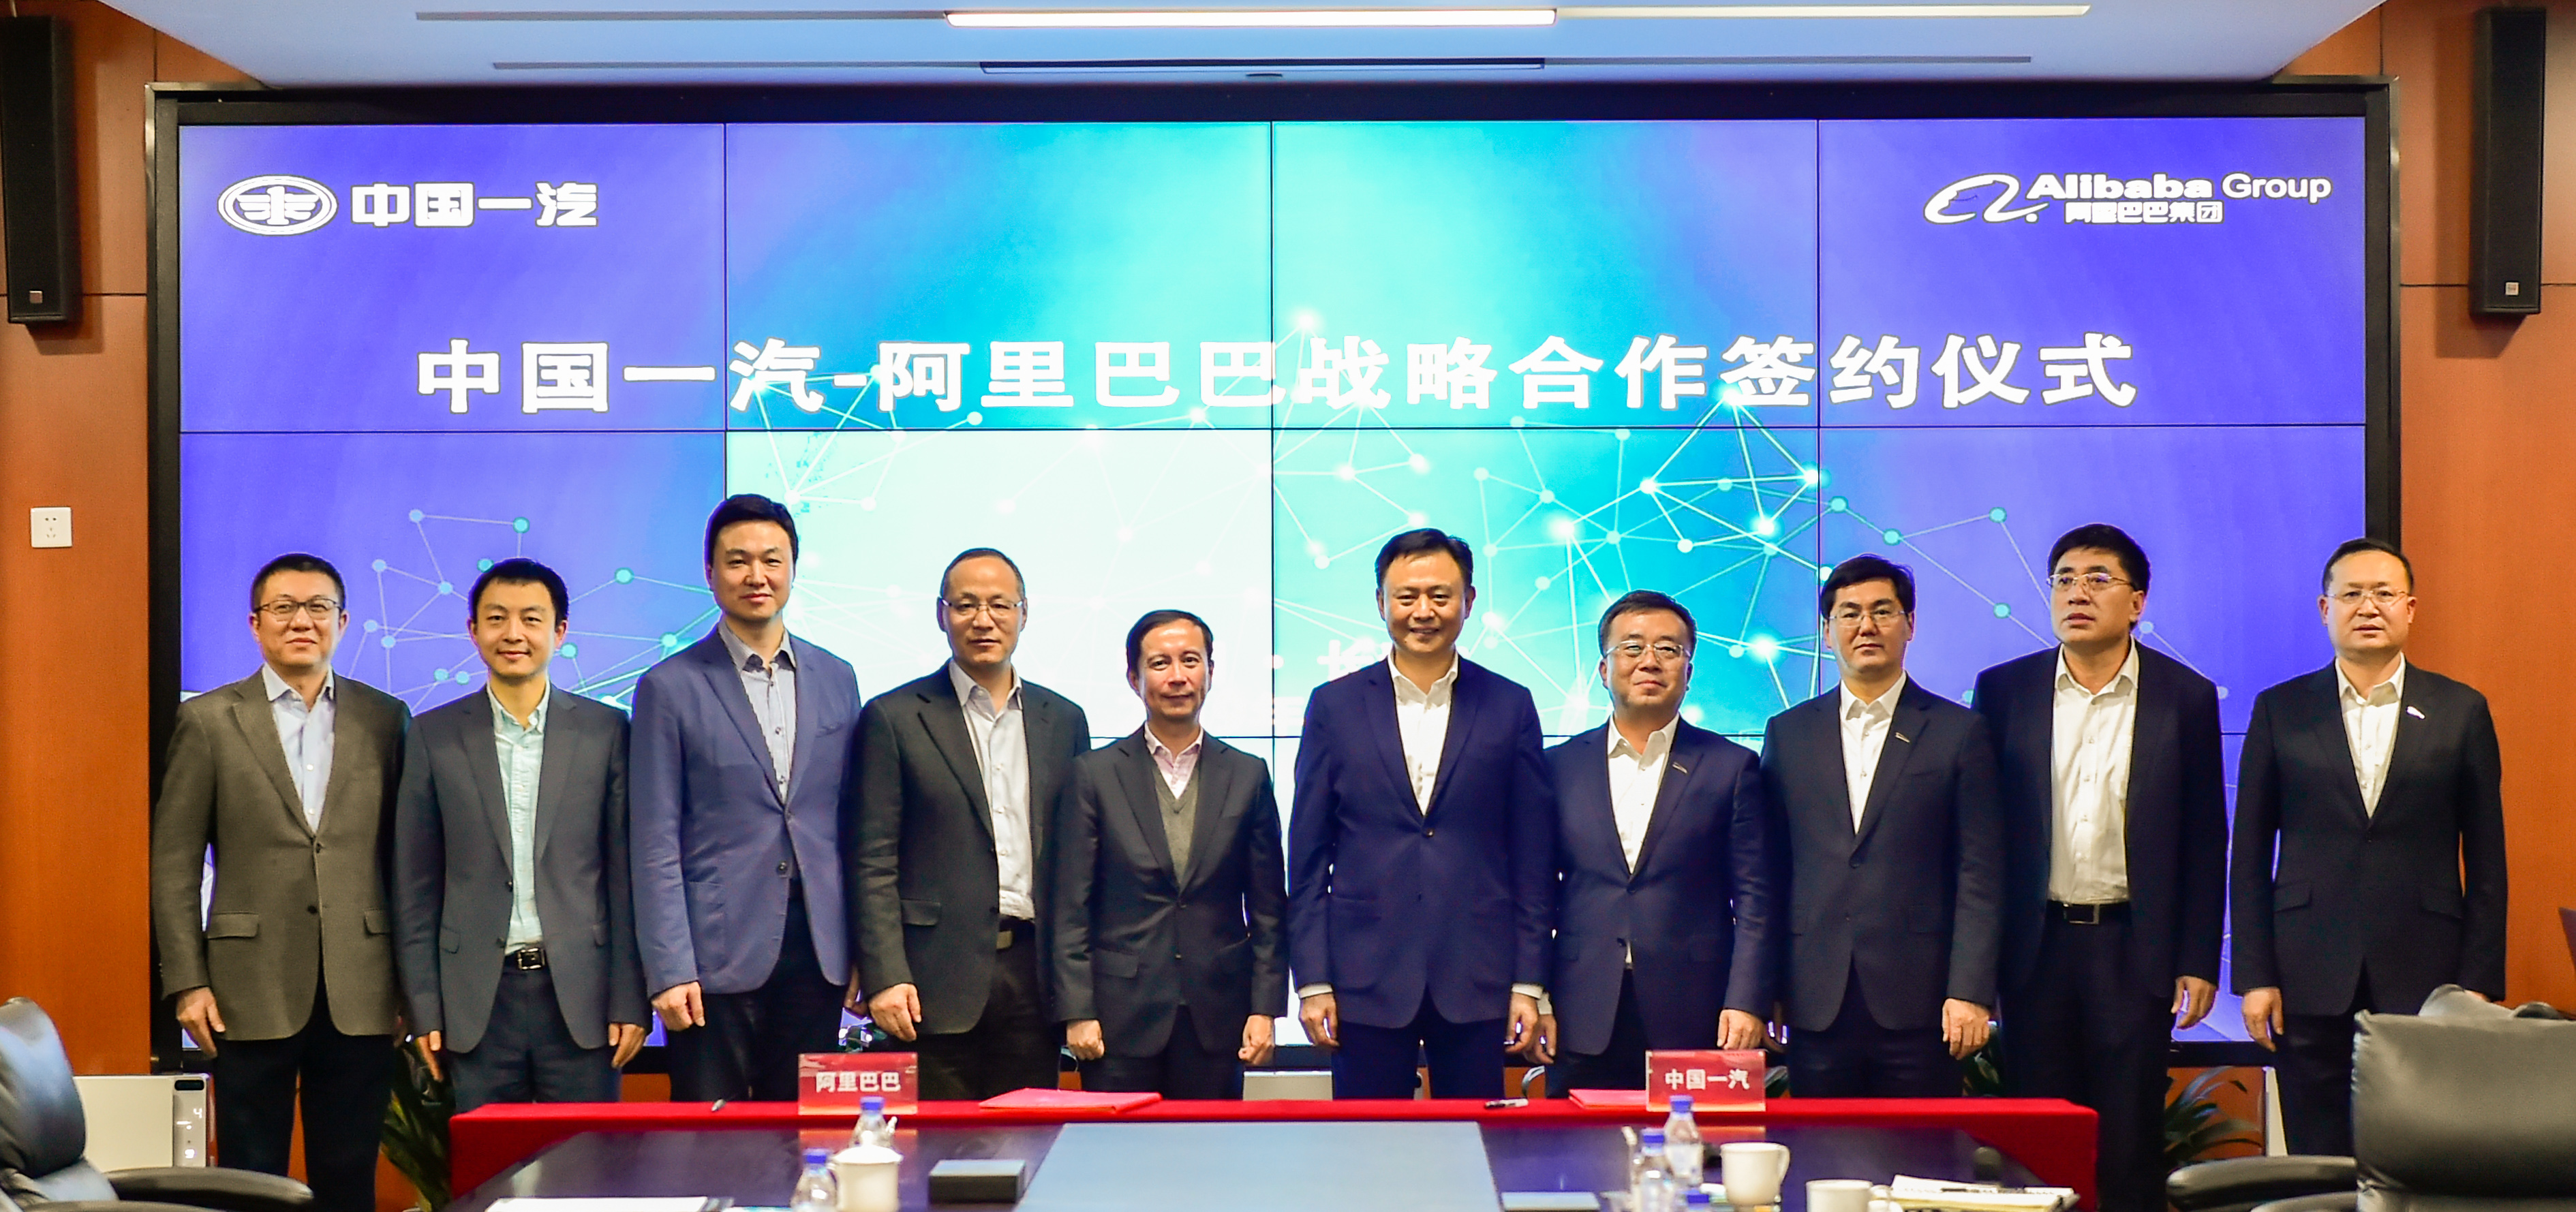 中国一汽与阿里巴巴签约合作 打造下一代智能网联汽车